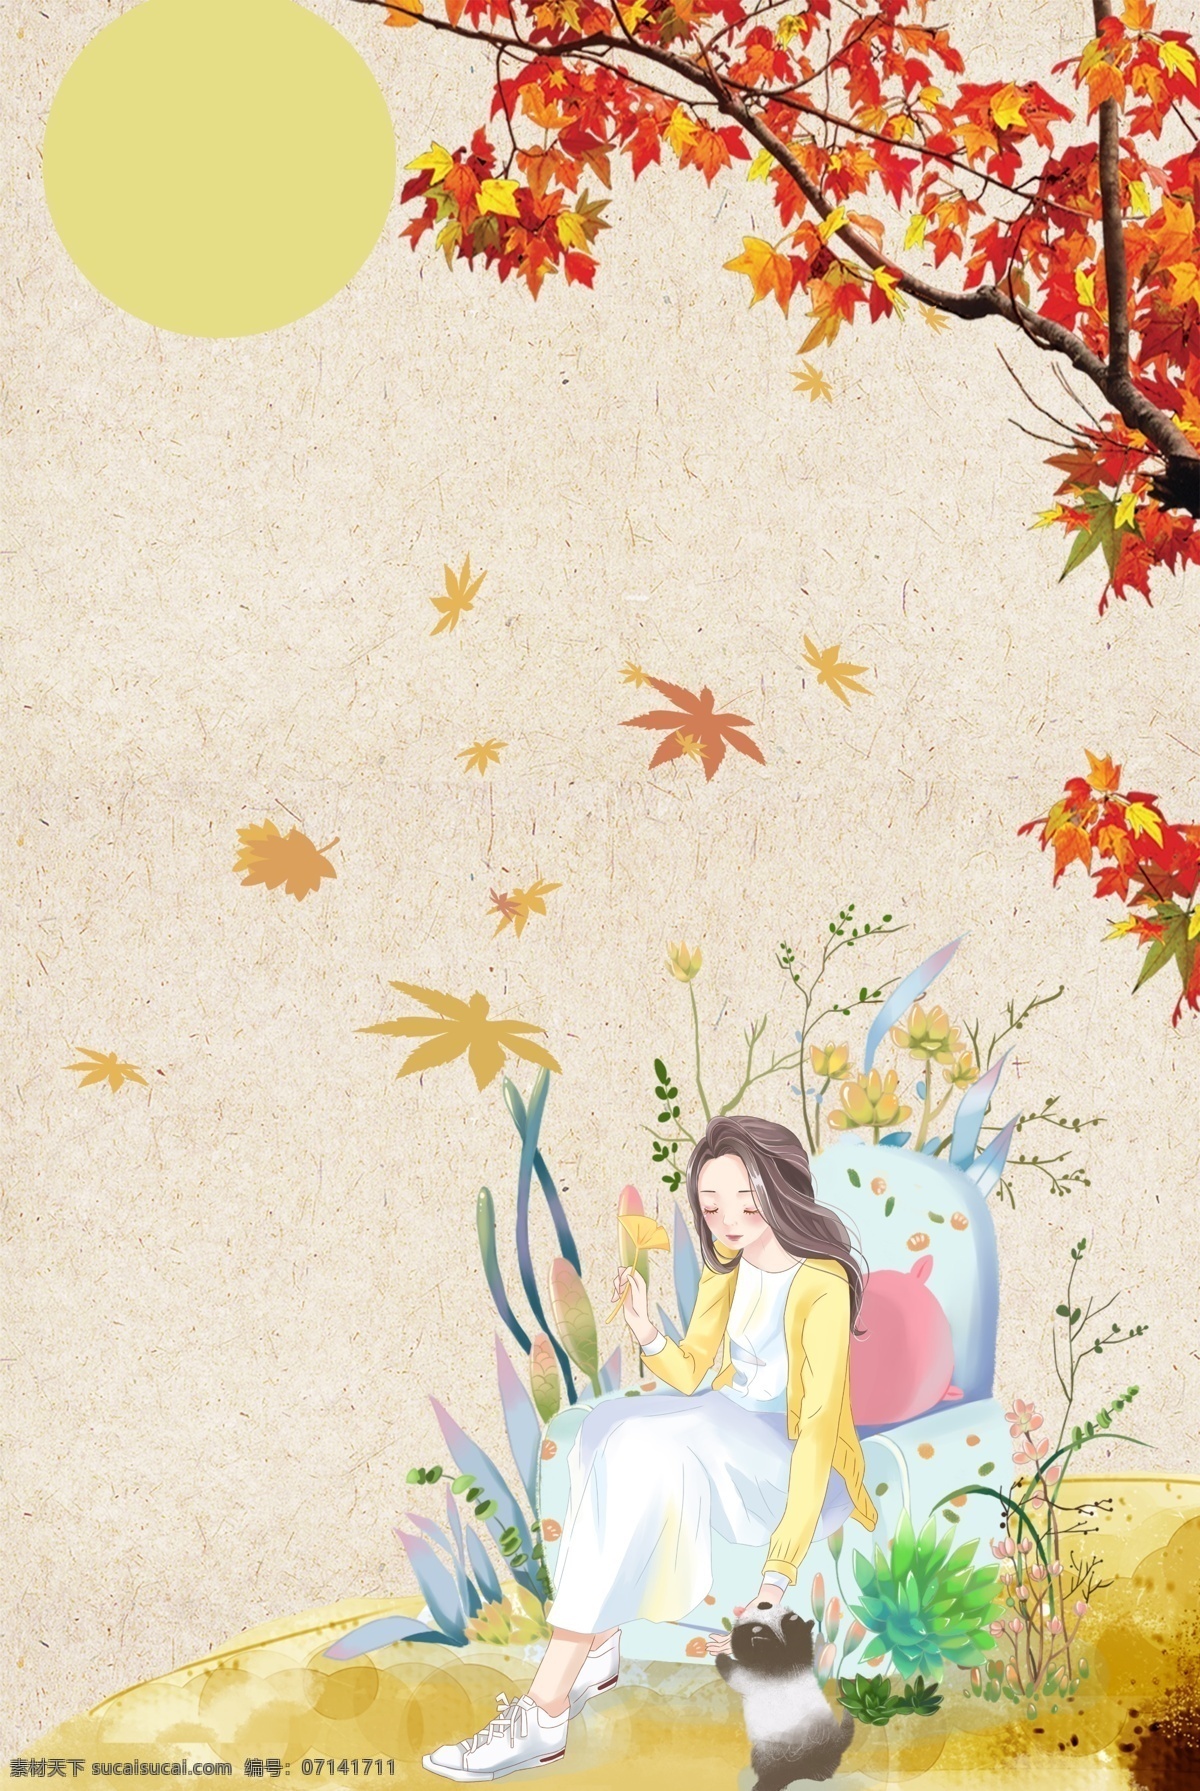 彩色 枫叶 植物 背景 装饰 可爱 小清新 换季